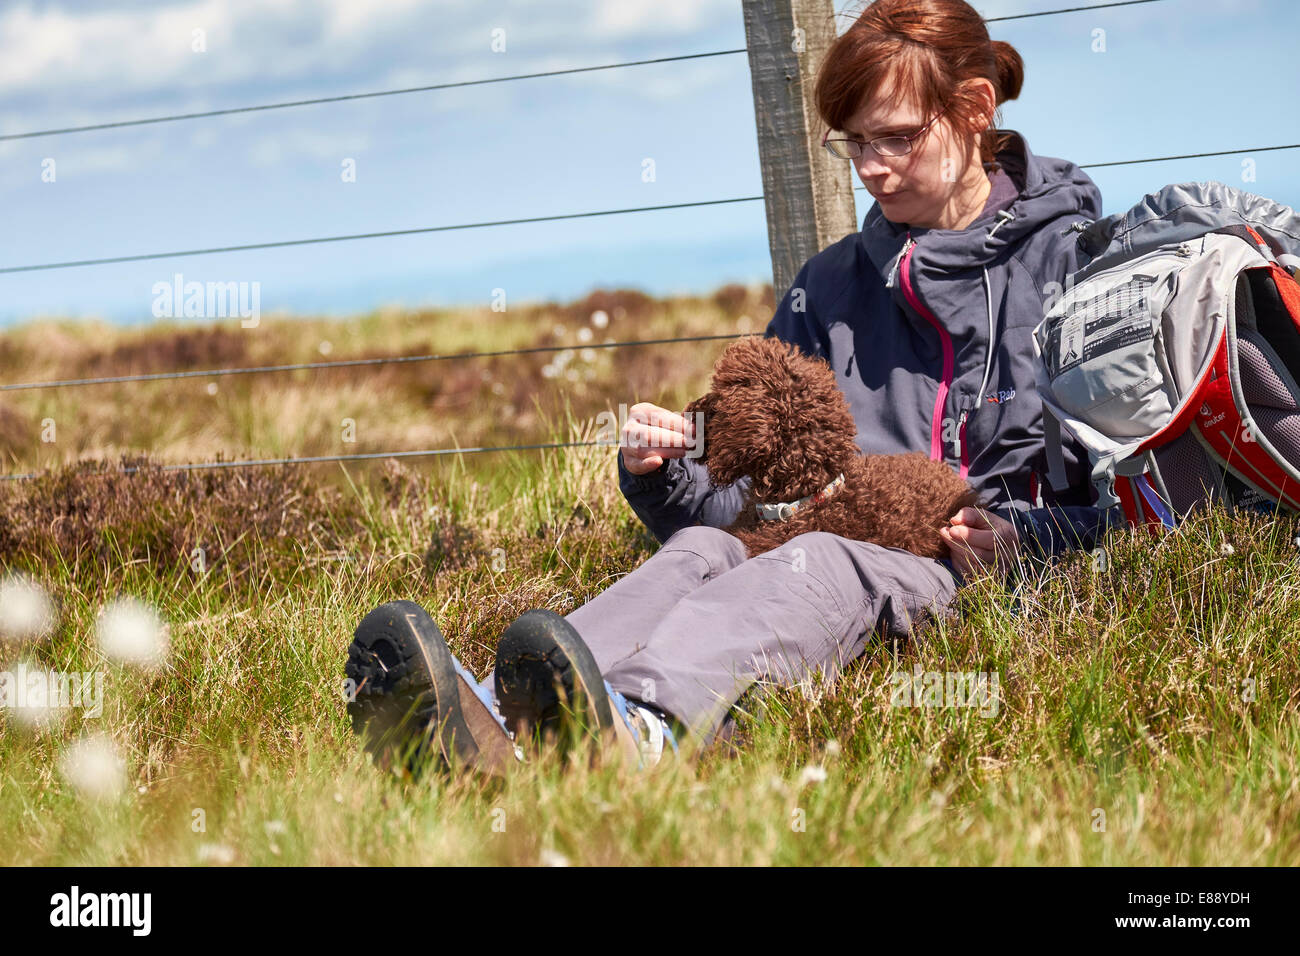 Un excursionista hembra alimentar a su perro mientras sales a caminar en el campo. Foto de stock